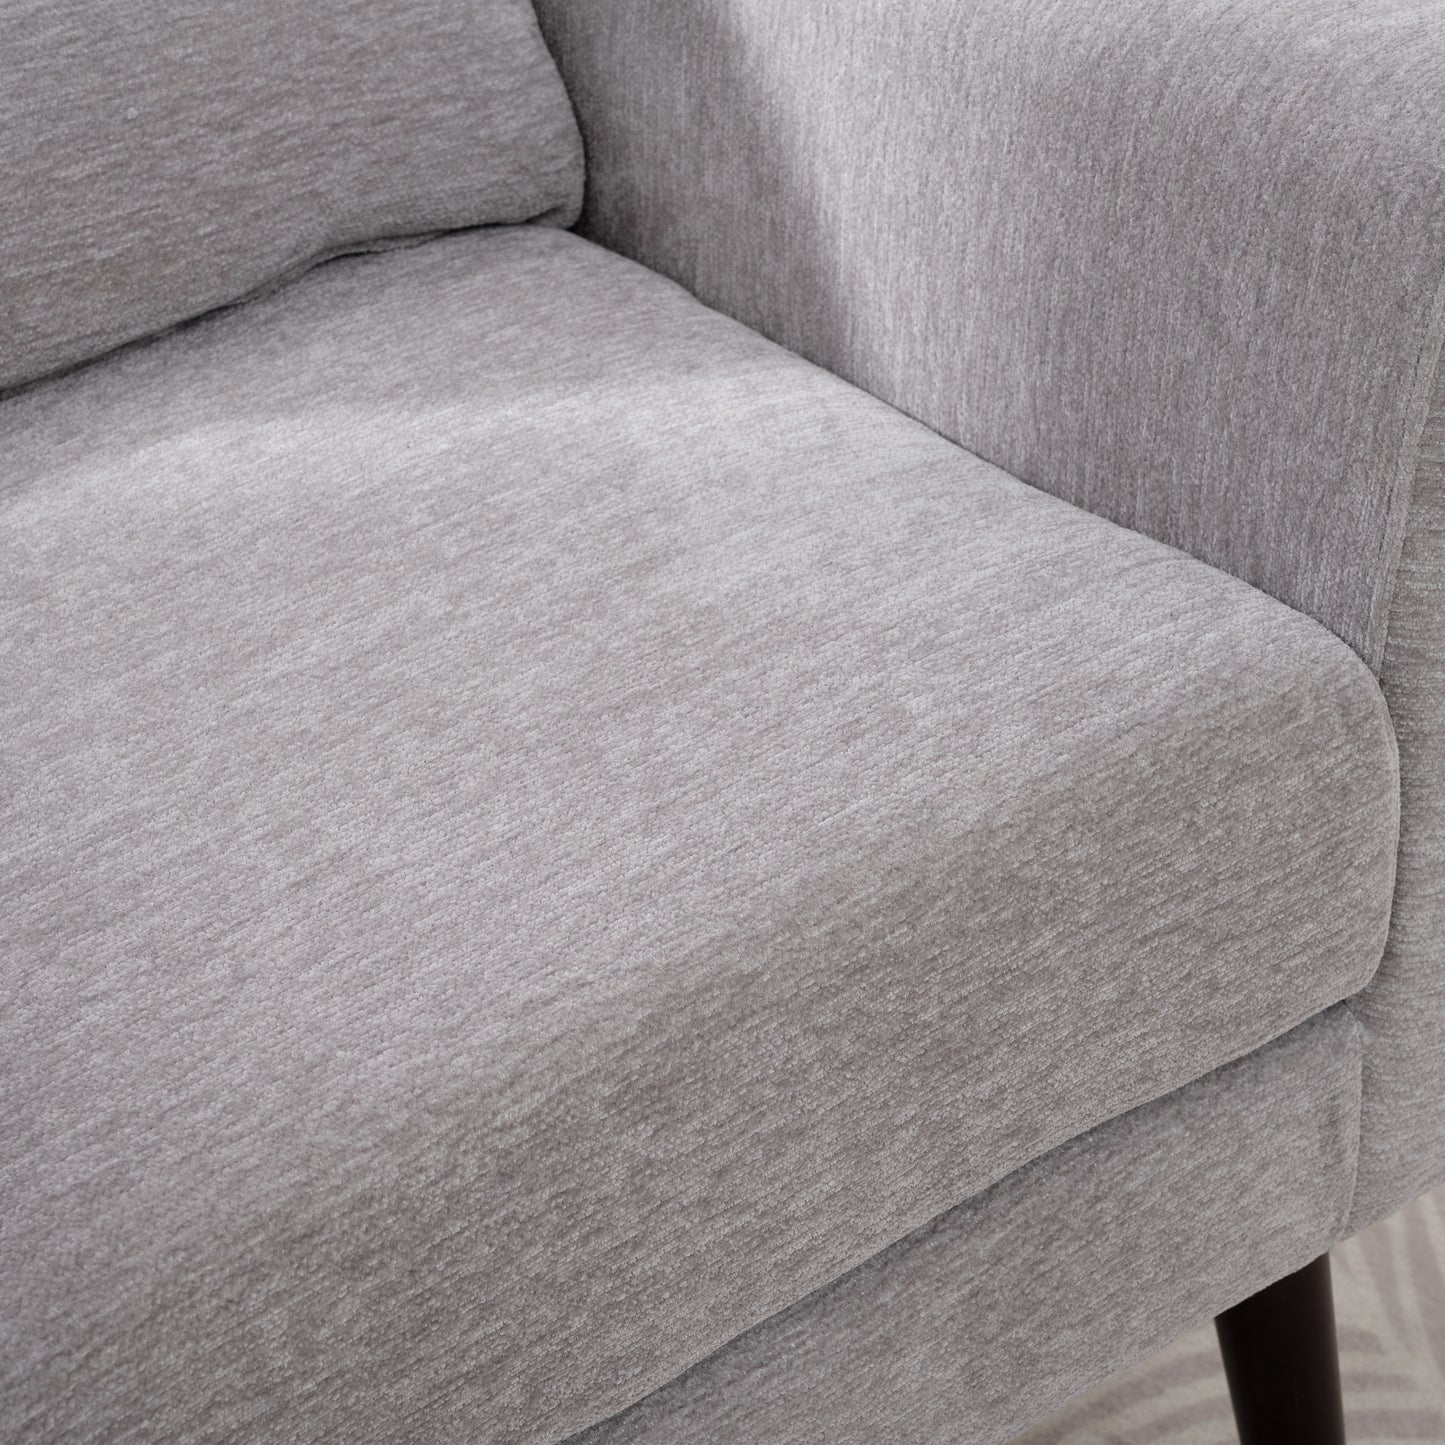 Chaise d'appoint moderne, fauteuils en chenille pour salon, fauteuil moderne rembourré, chaise longue rembourrée et confortable dans un petit espace, chambre à coucher, avec oreiller, pieds en bois massif (gris)